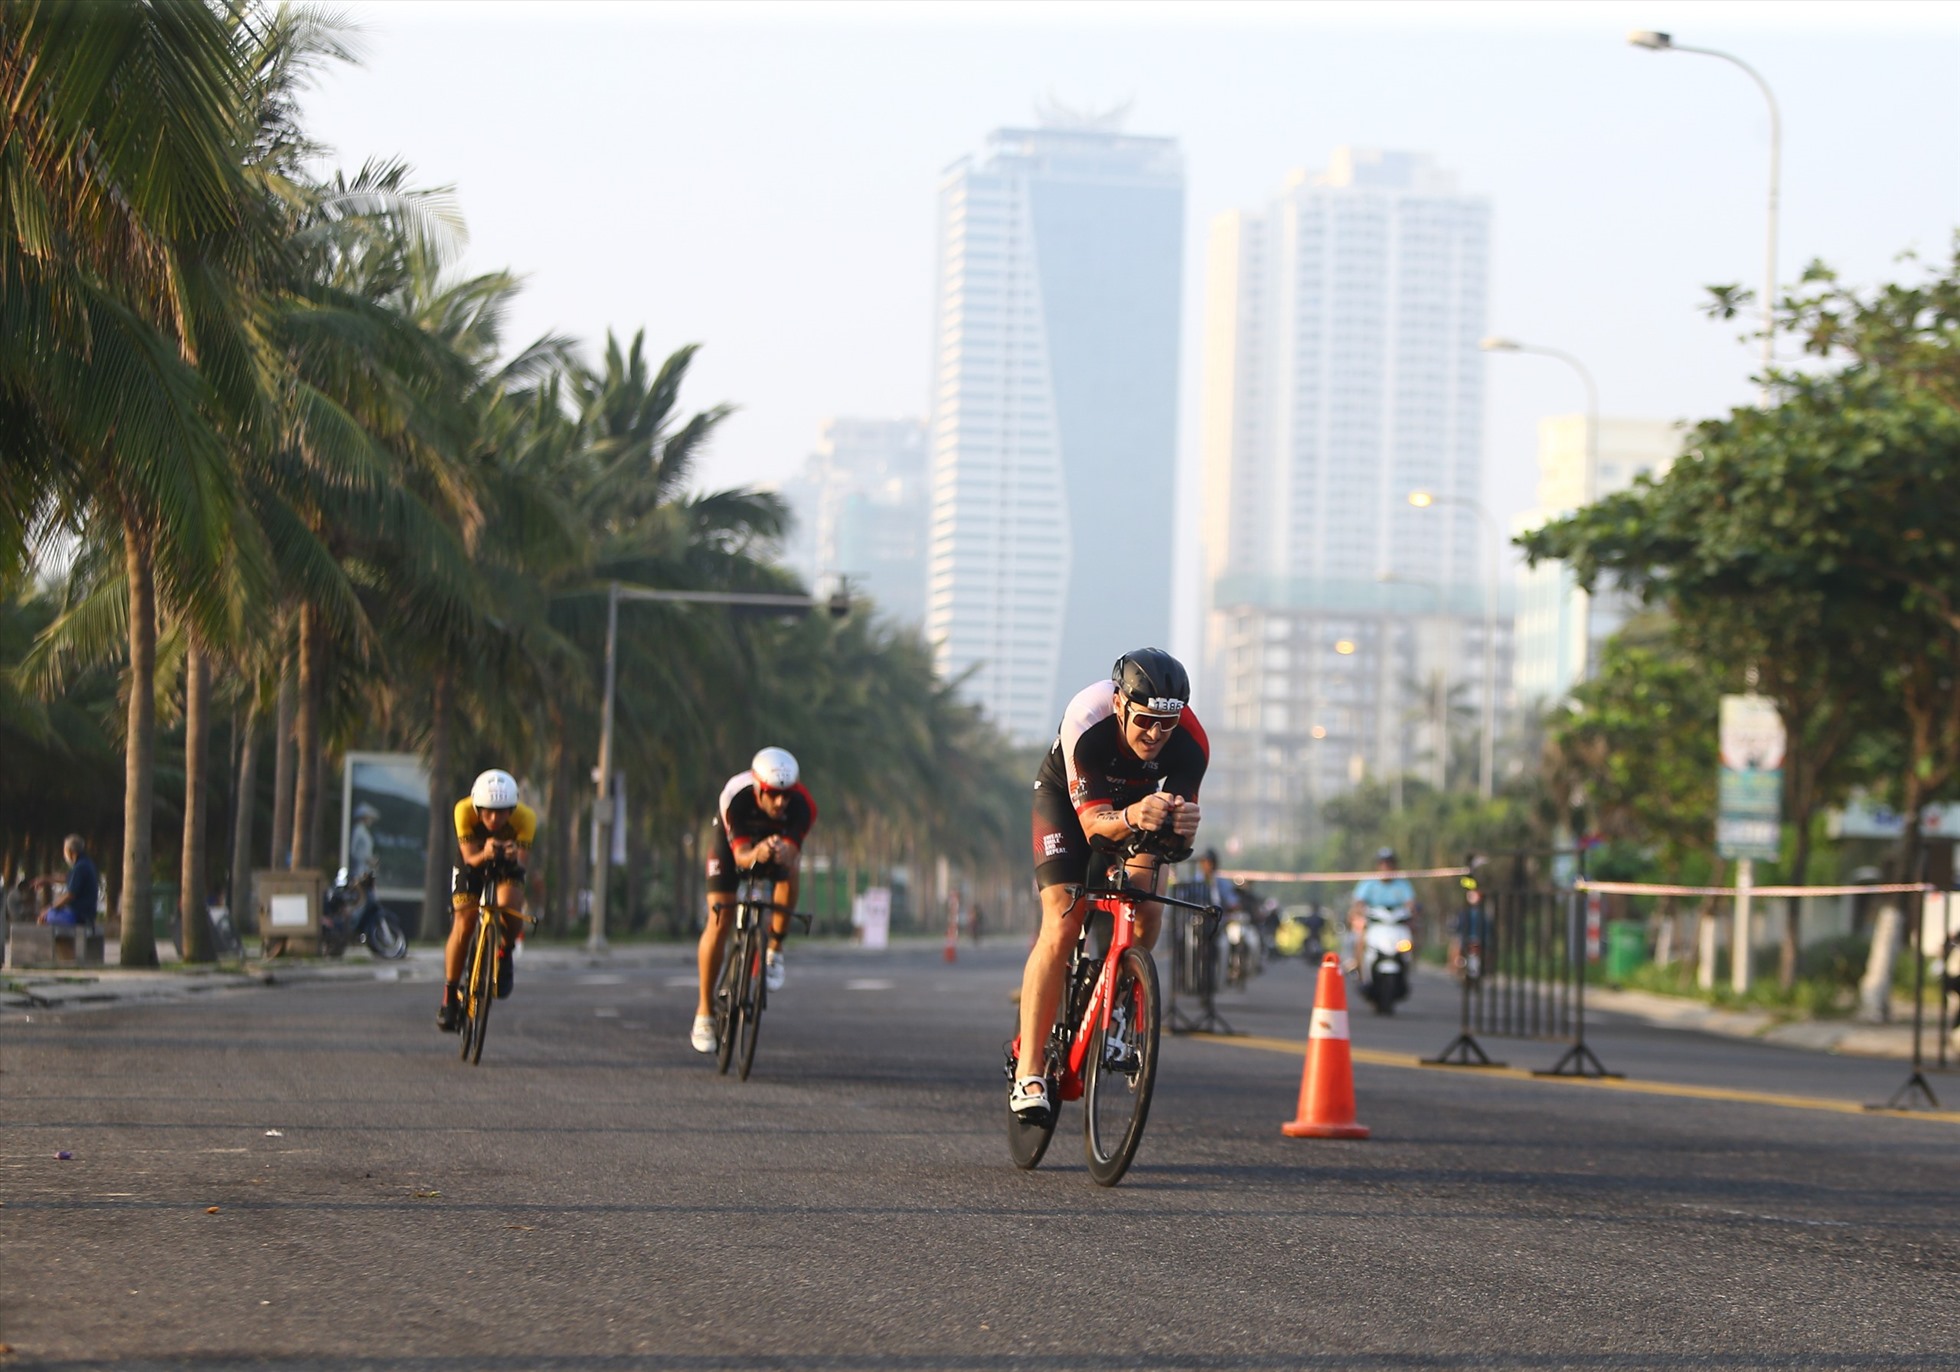 Nội dung đua xe đạp sẽ theo lộ trình ngang qua các tuyến đường dọc bãi biển Đà Nẵng. Ảnh: Ban tổ chức IRONMAN 70.3.